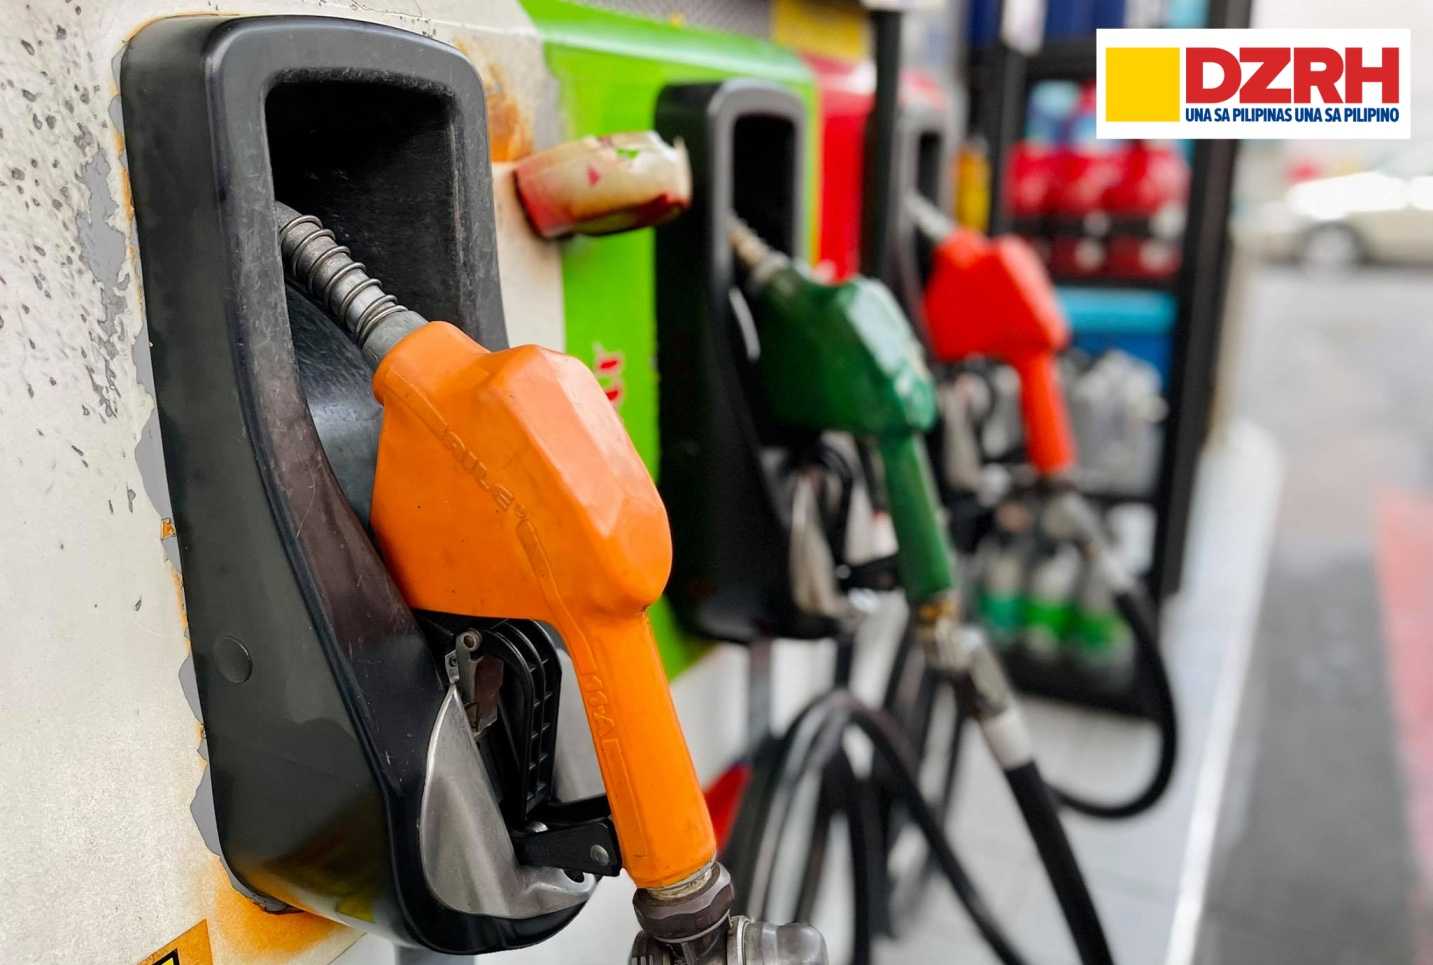 Price rollback for kerosene, diesel; gasoline to go up